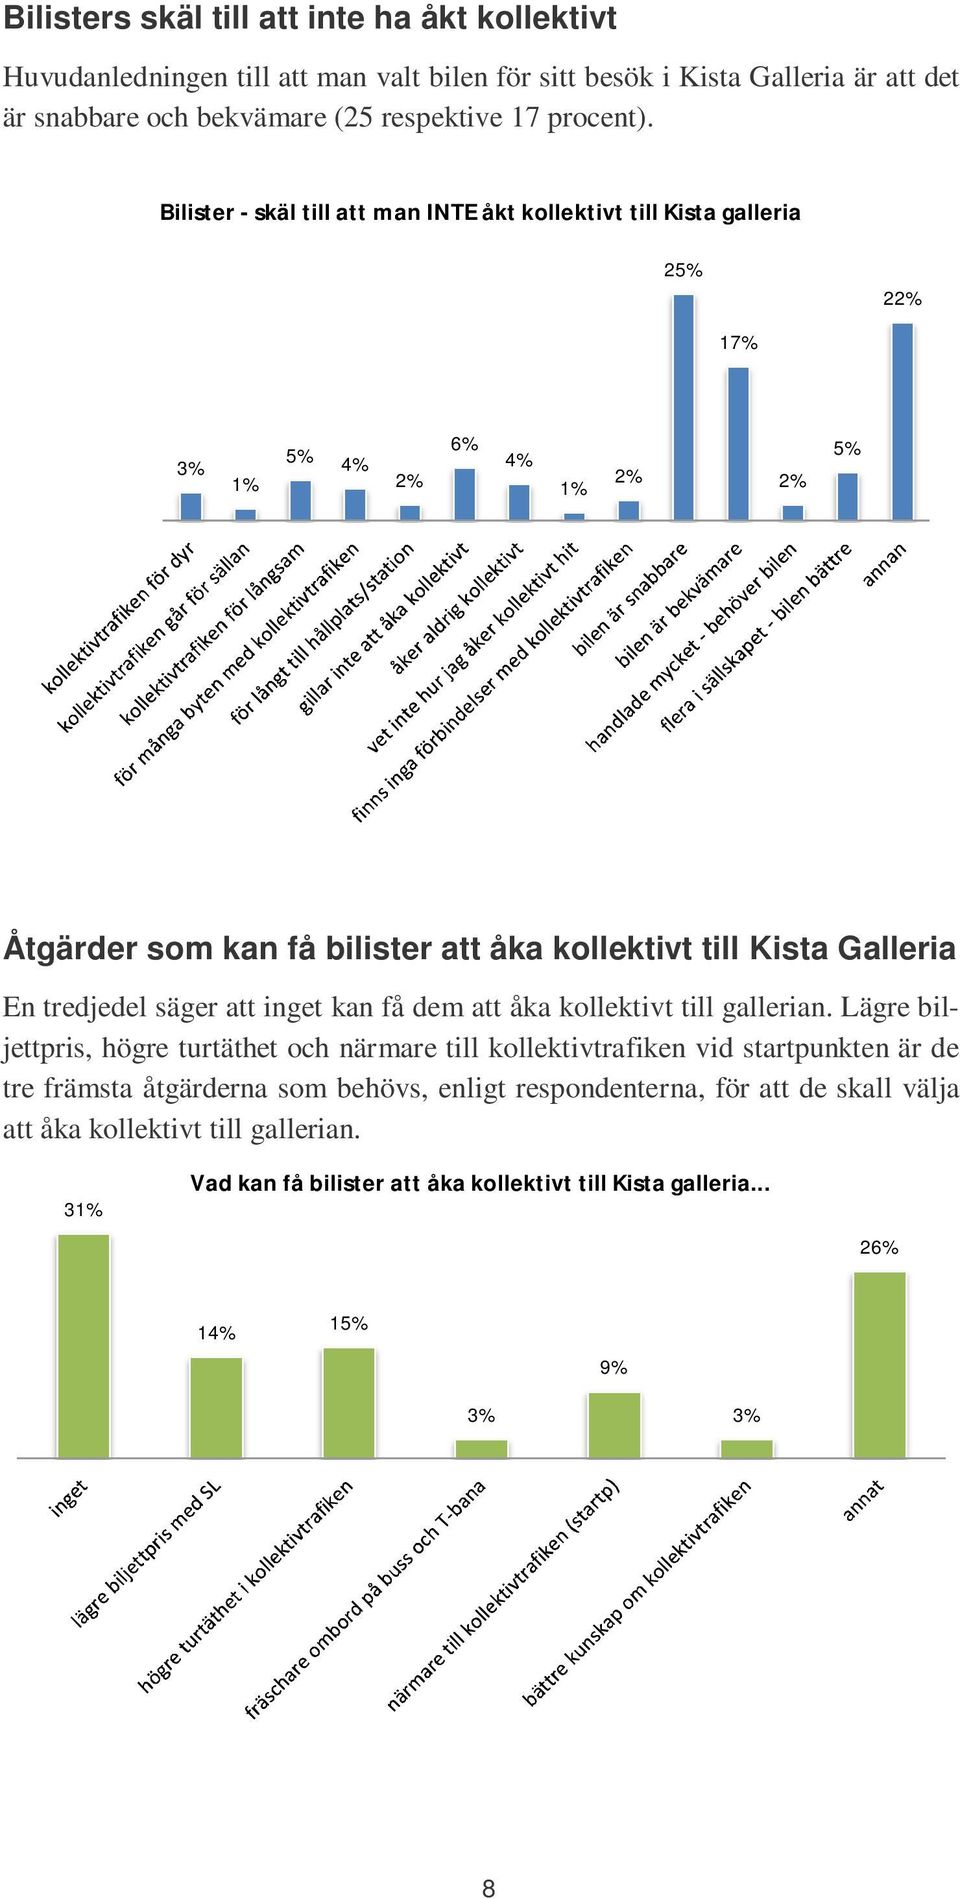 Bilister - skäl till att man INTE åkt kollektivt till Kista galleria 2 22% 17% 3% 1% 2% 6% 1% 2% 2% Åtgärder som kan få bilister att åka kollektivt till Kista Galleria En tredjedel